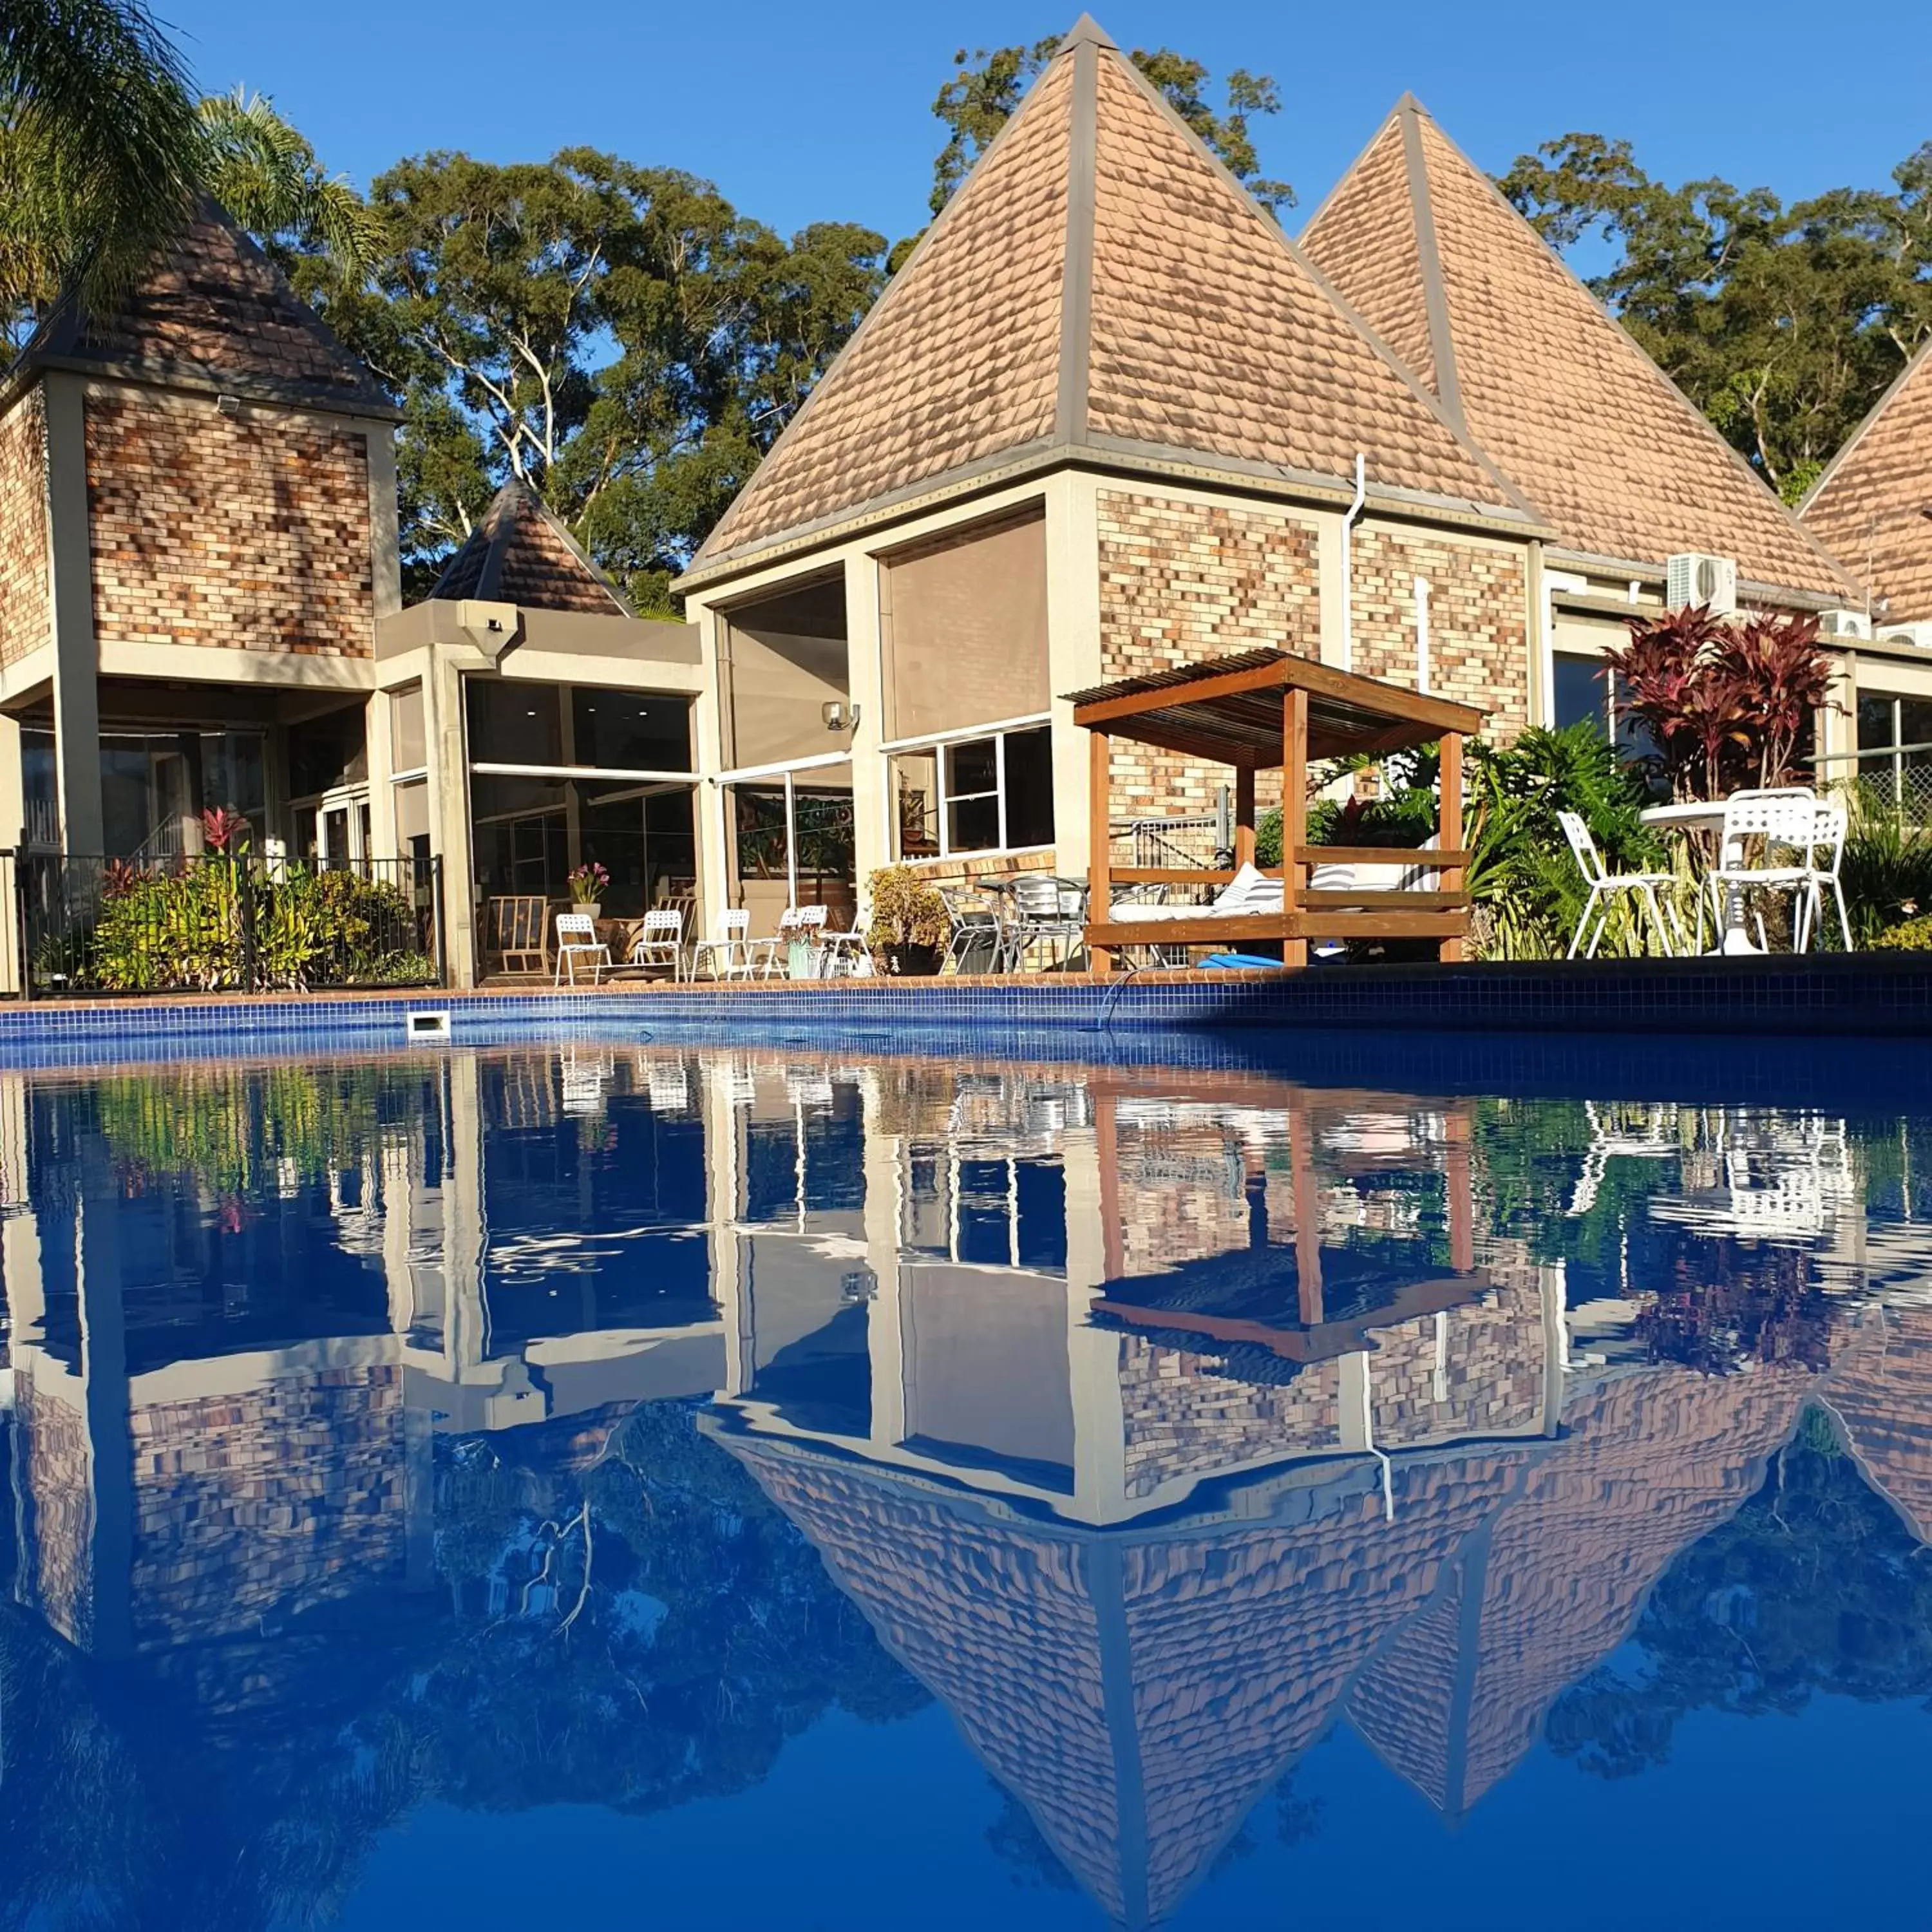 Property building, Swimming Pool in Sanctuary Resort Motor Inn